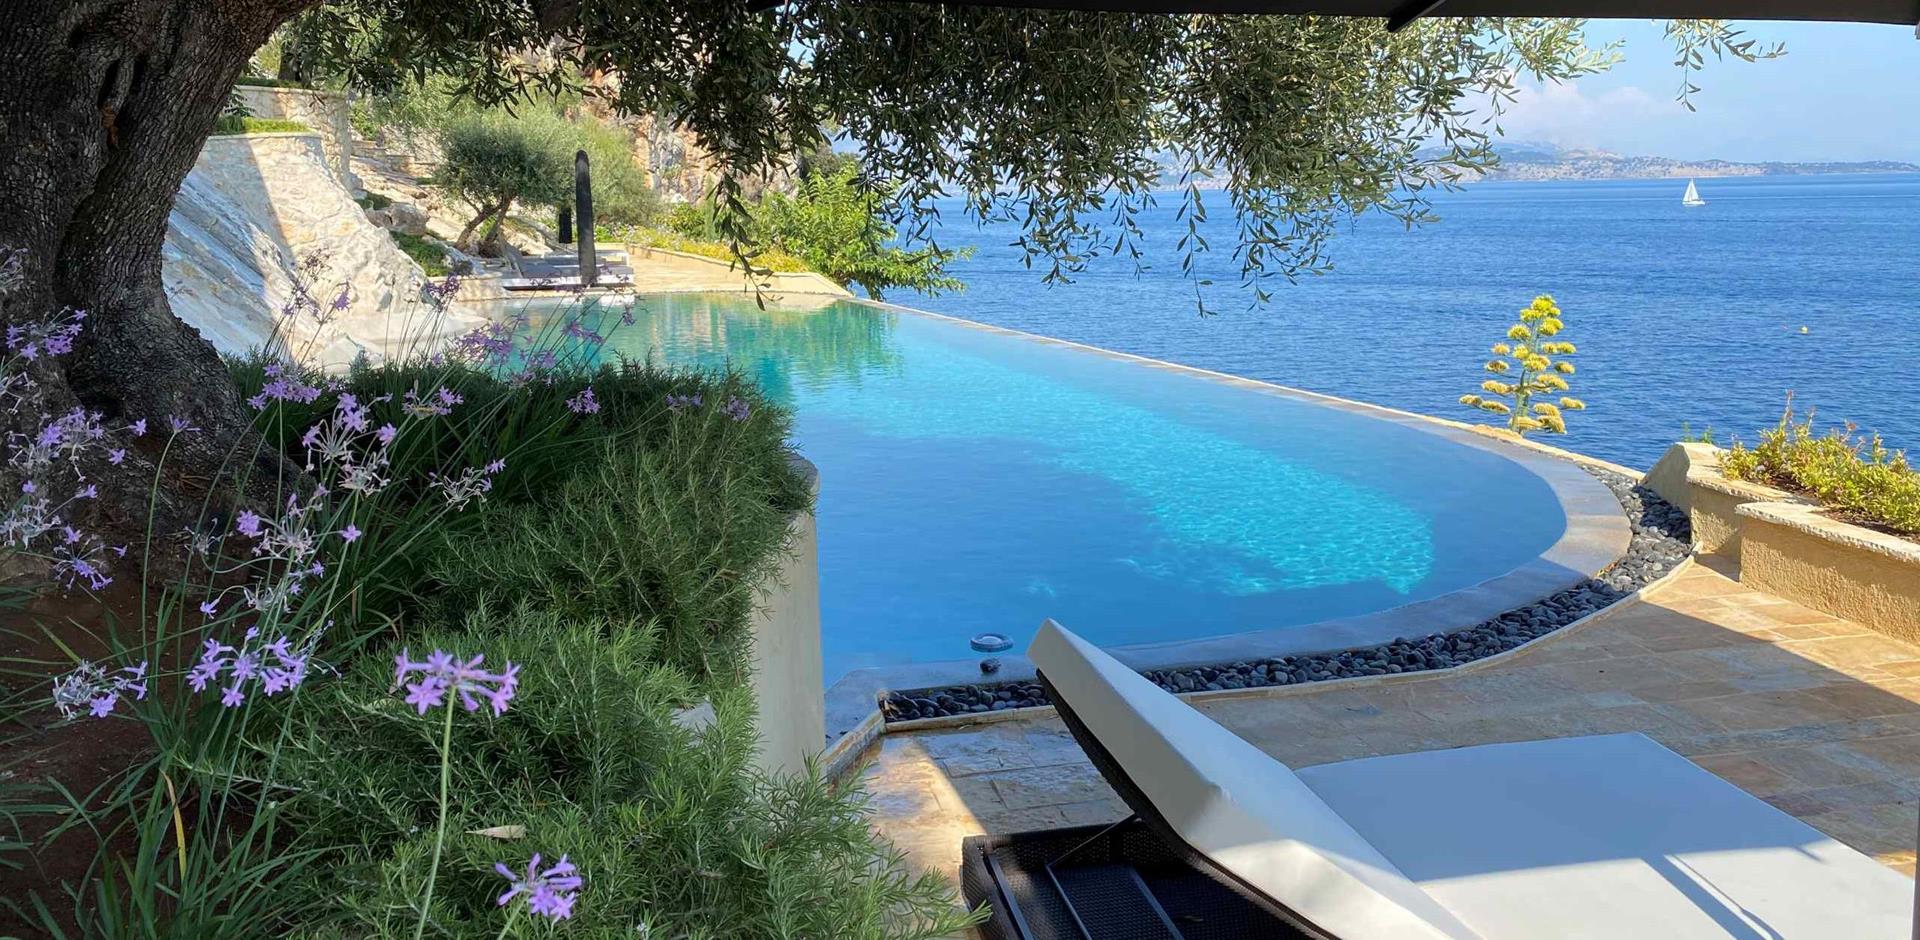 Pool, Villa Lyra, Corfu, Greece, Europe